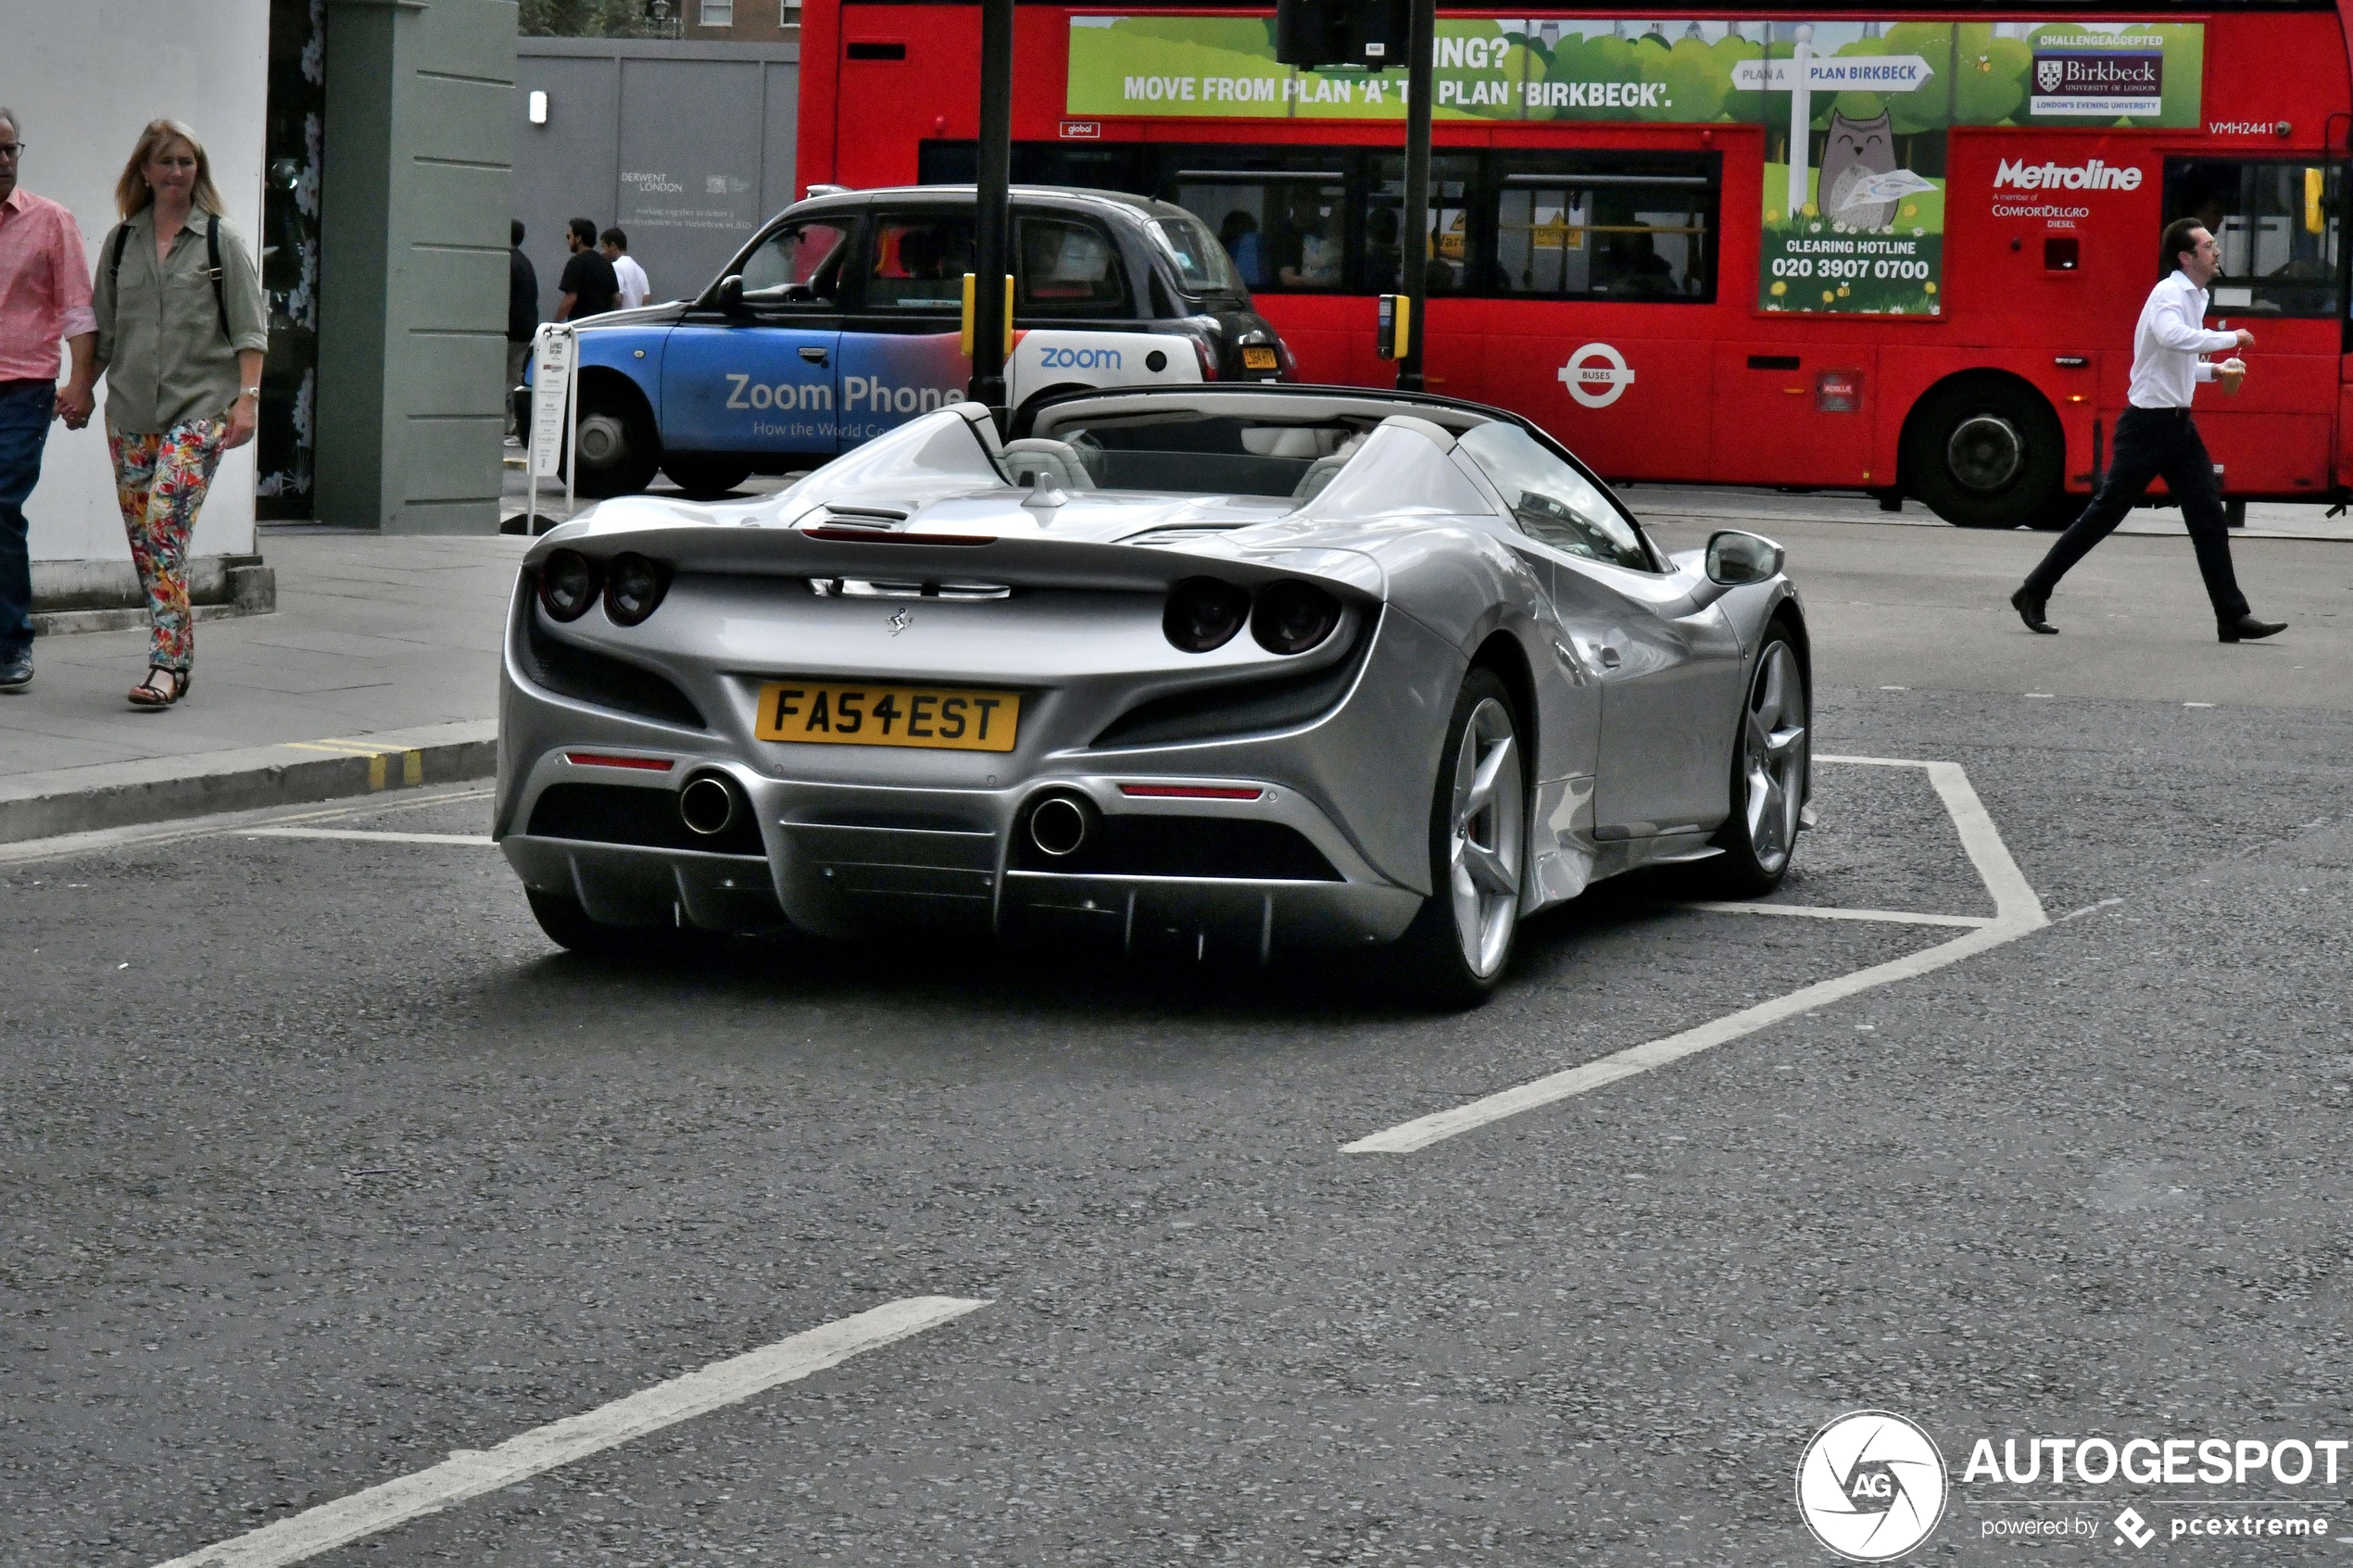 Dit is de snelste auto in London!